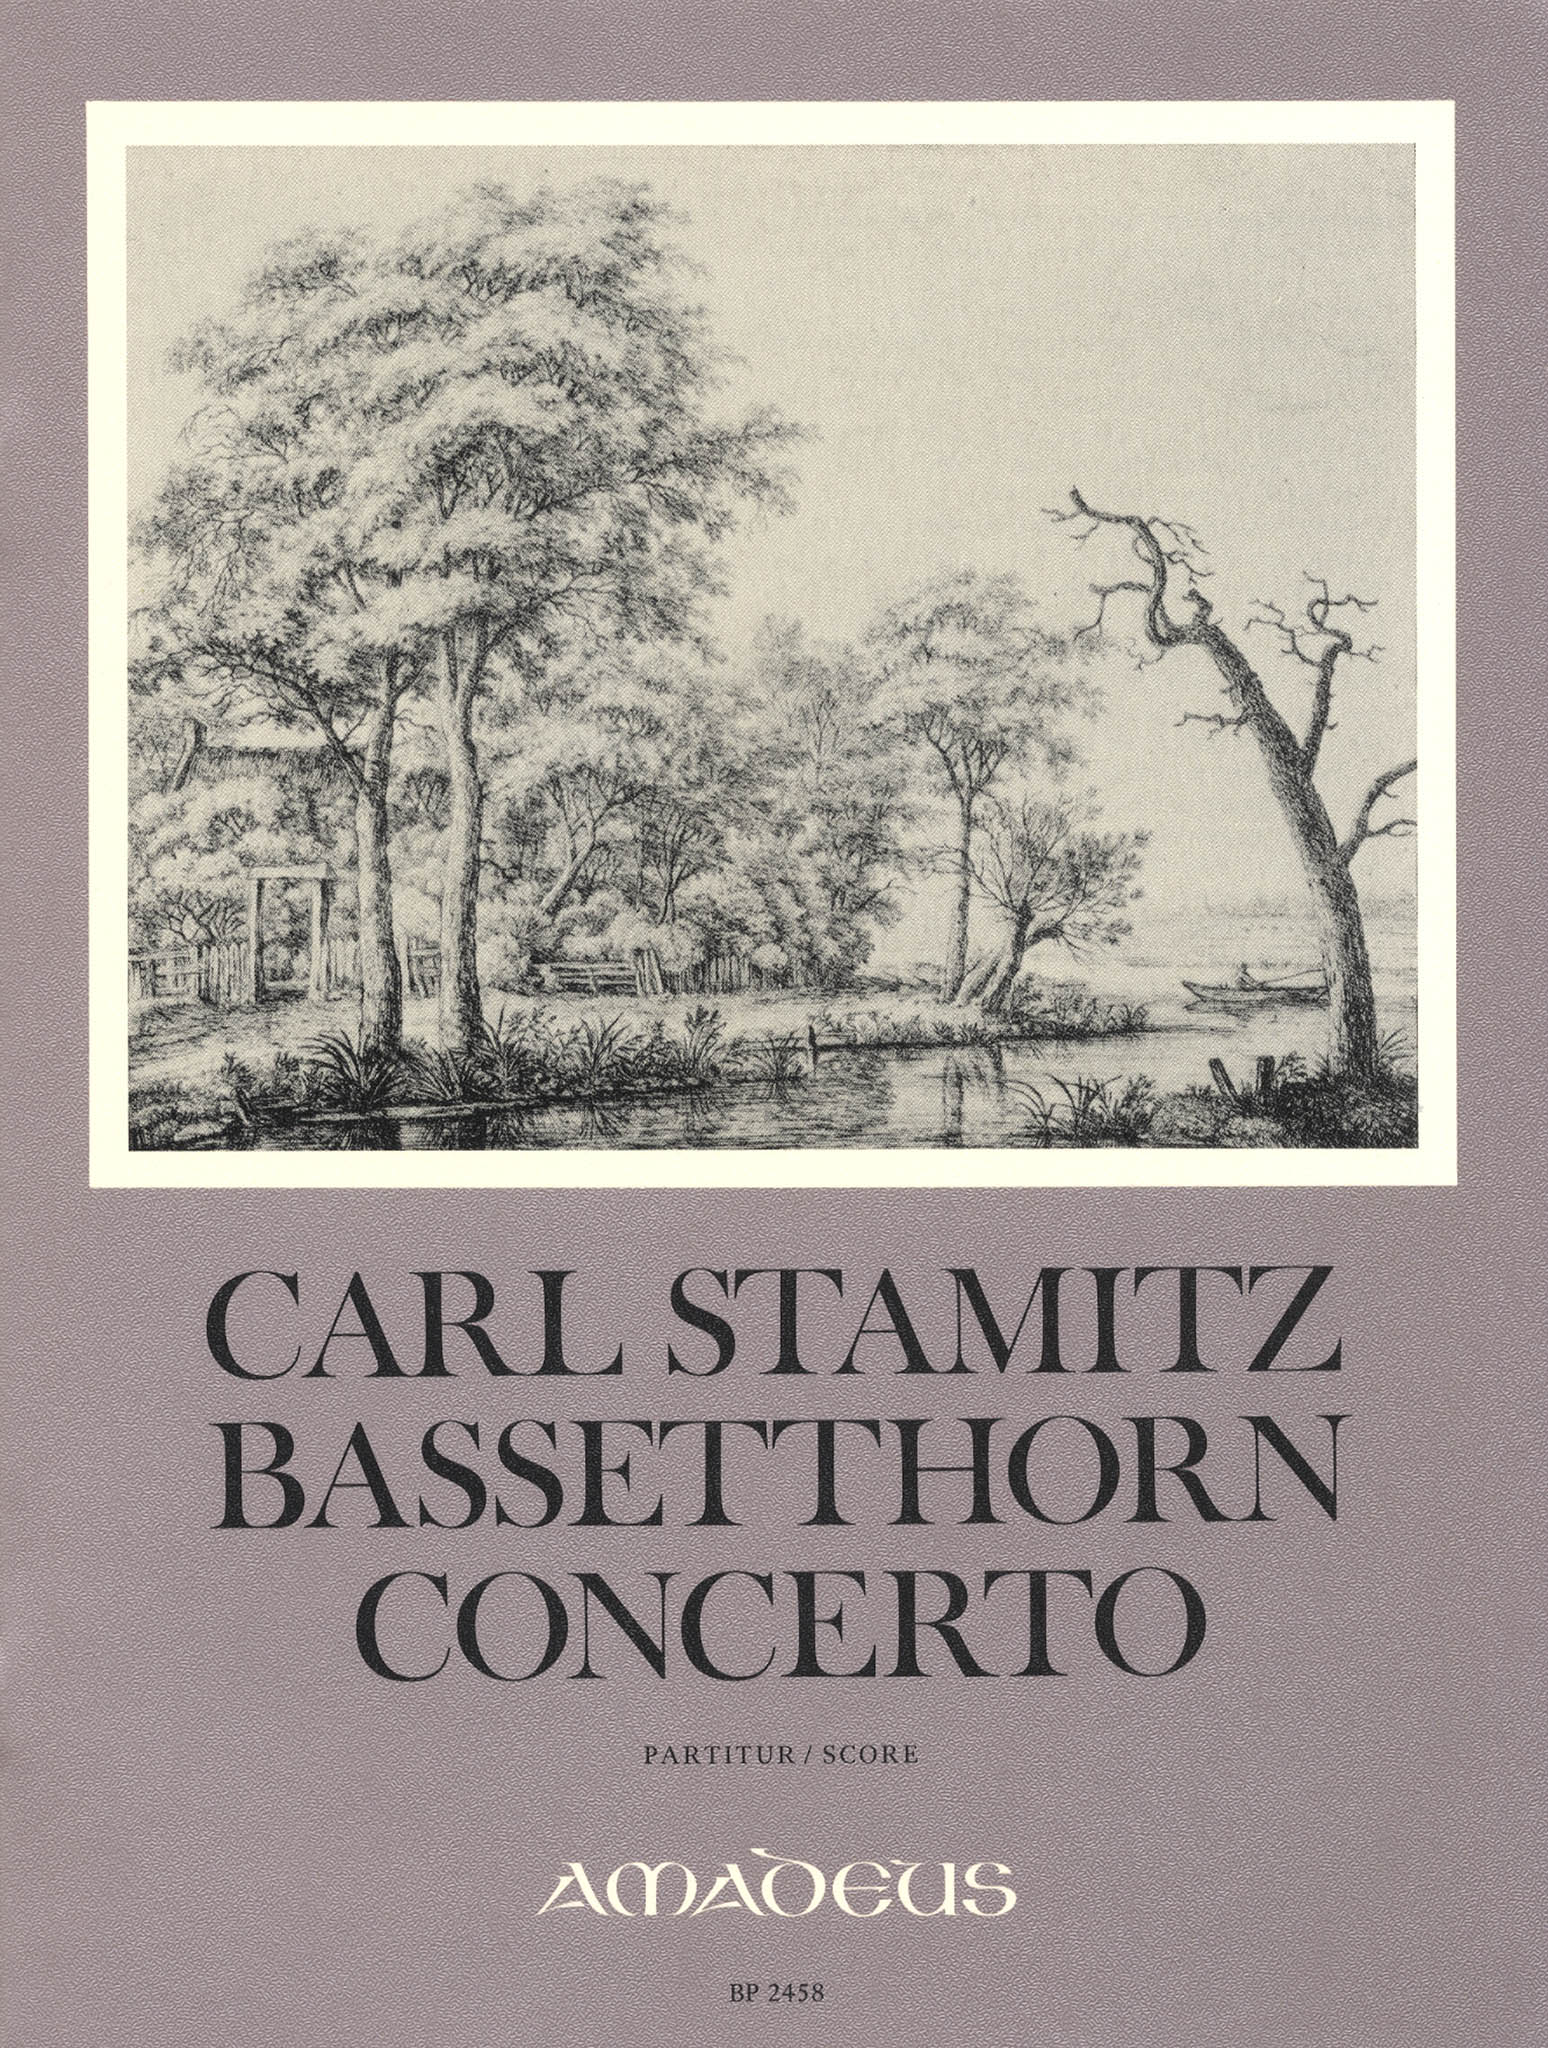 Carl Stamitz Basset Horn Concerto (full score) cover